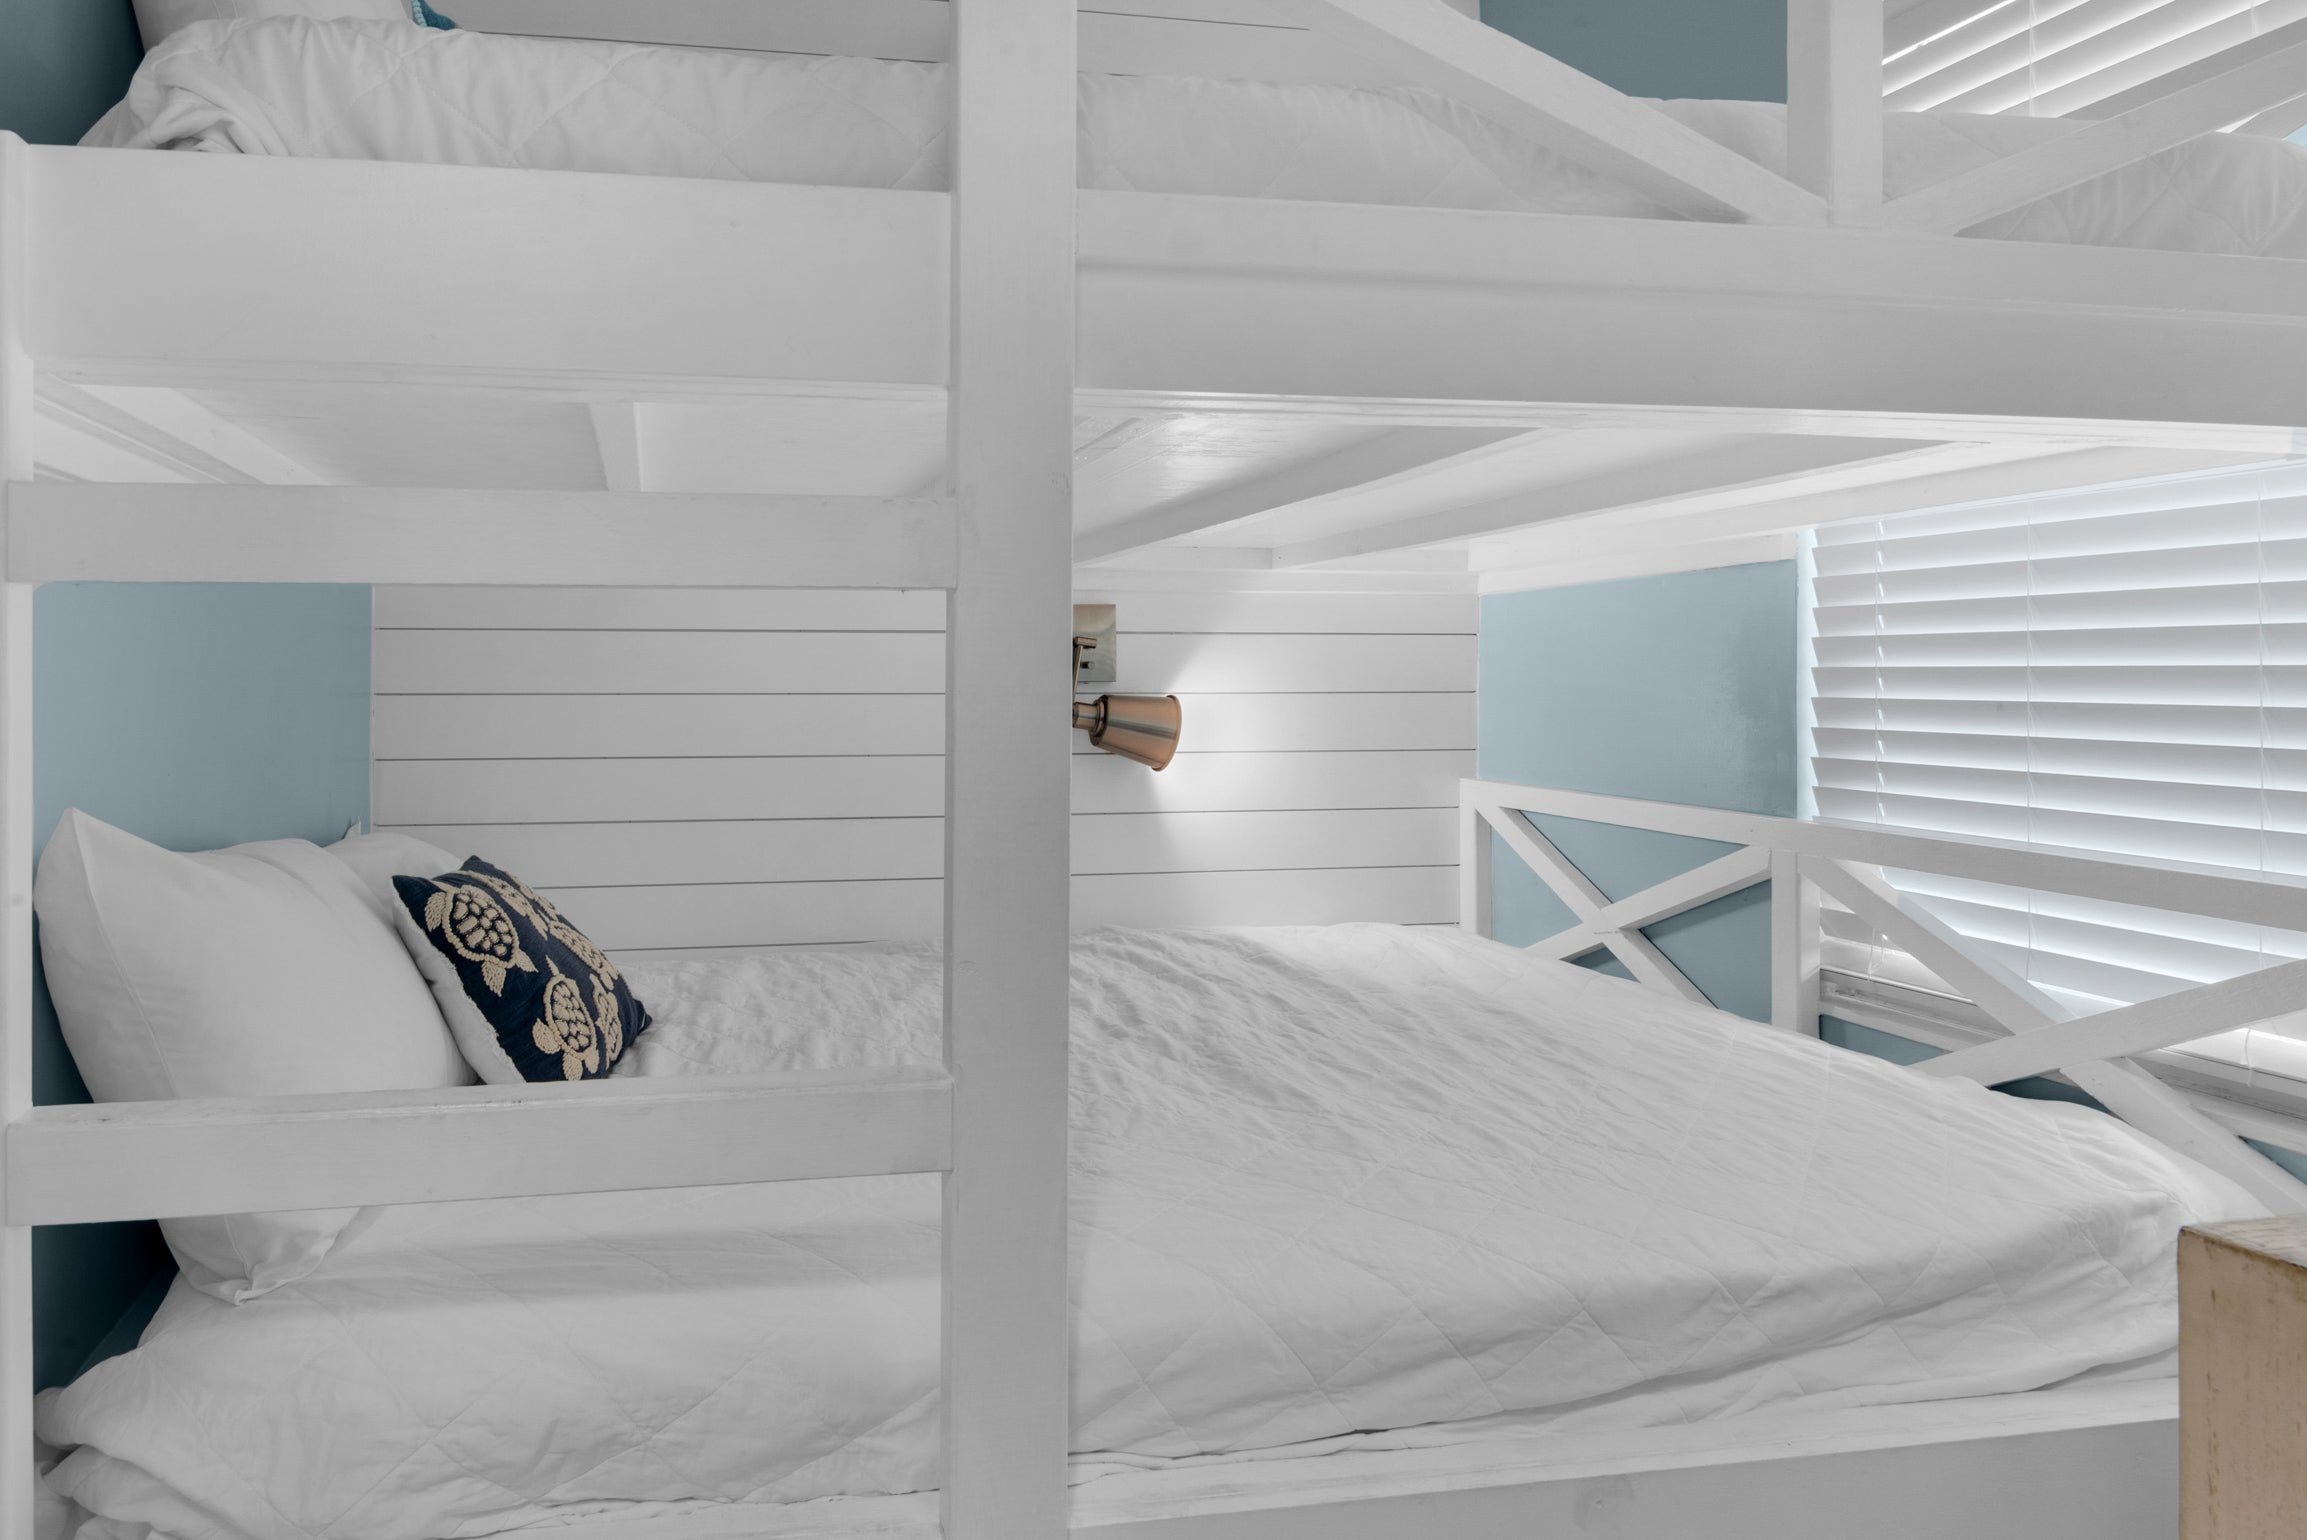 Guest bunk beds